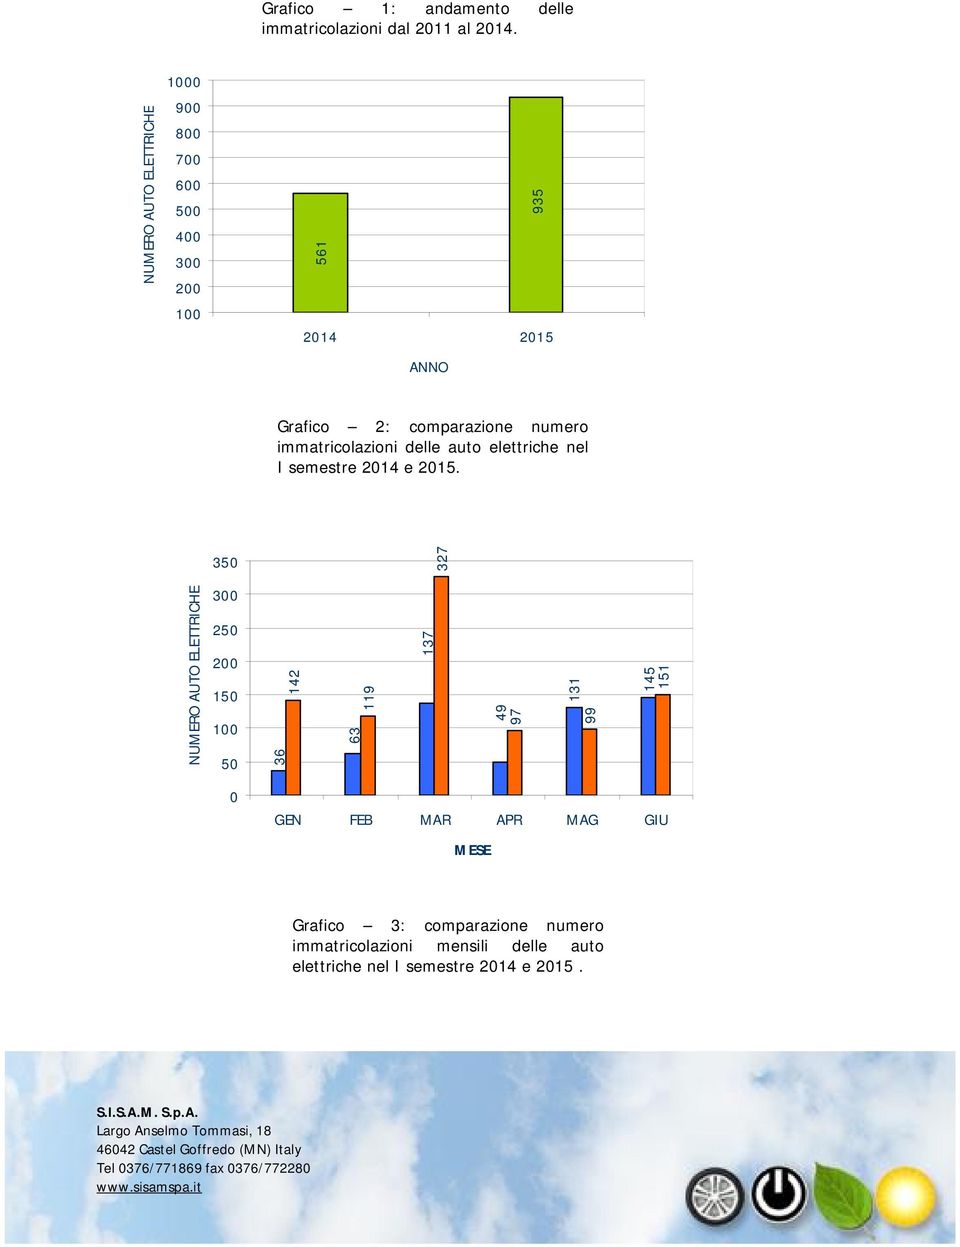 immatricolazioni delle auto elettriche nel I semestre 2014 e 2015.